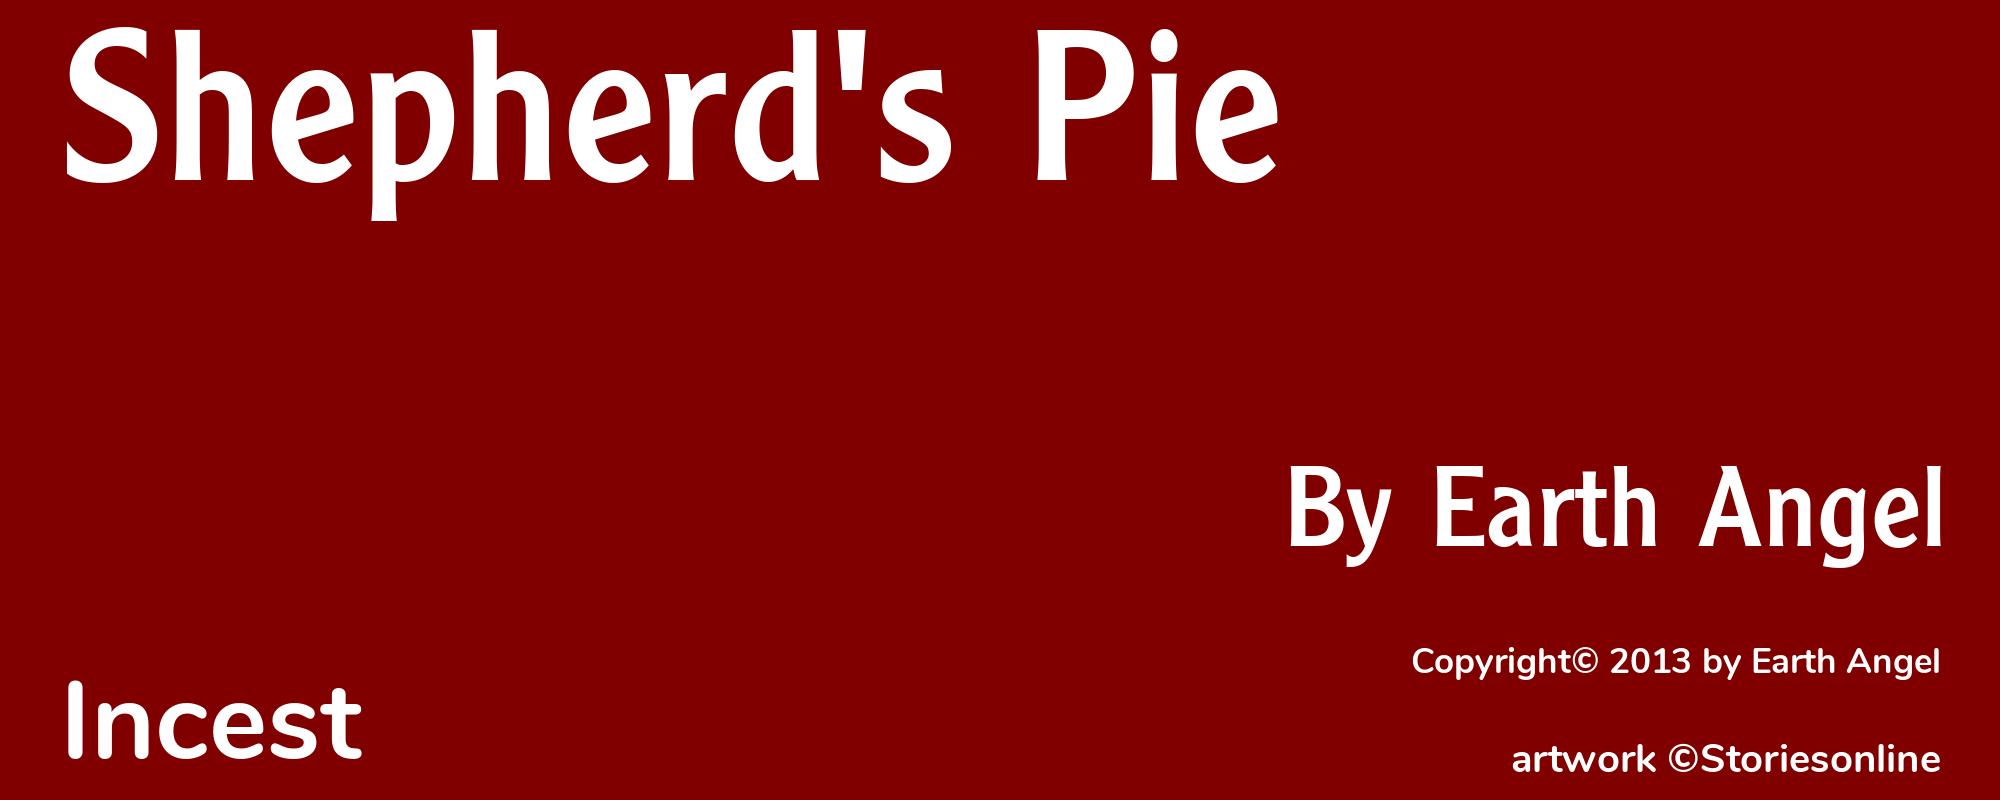 Shepherd's Pie - Cover